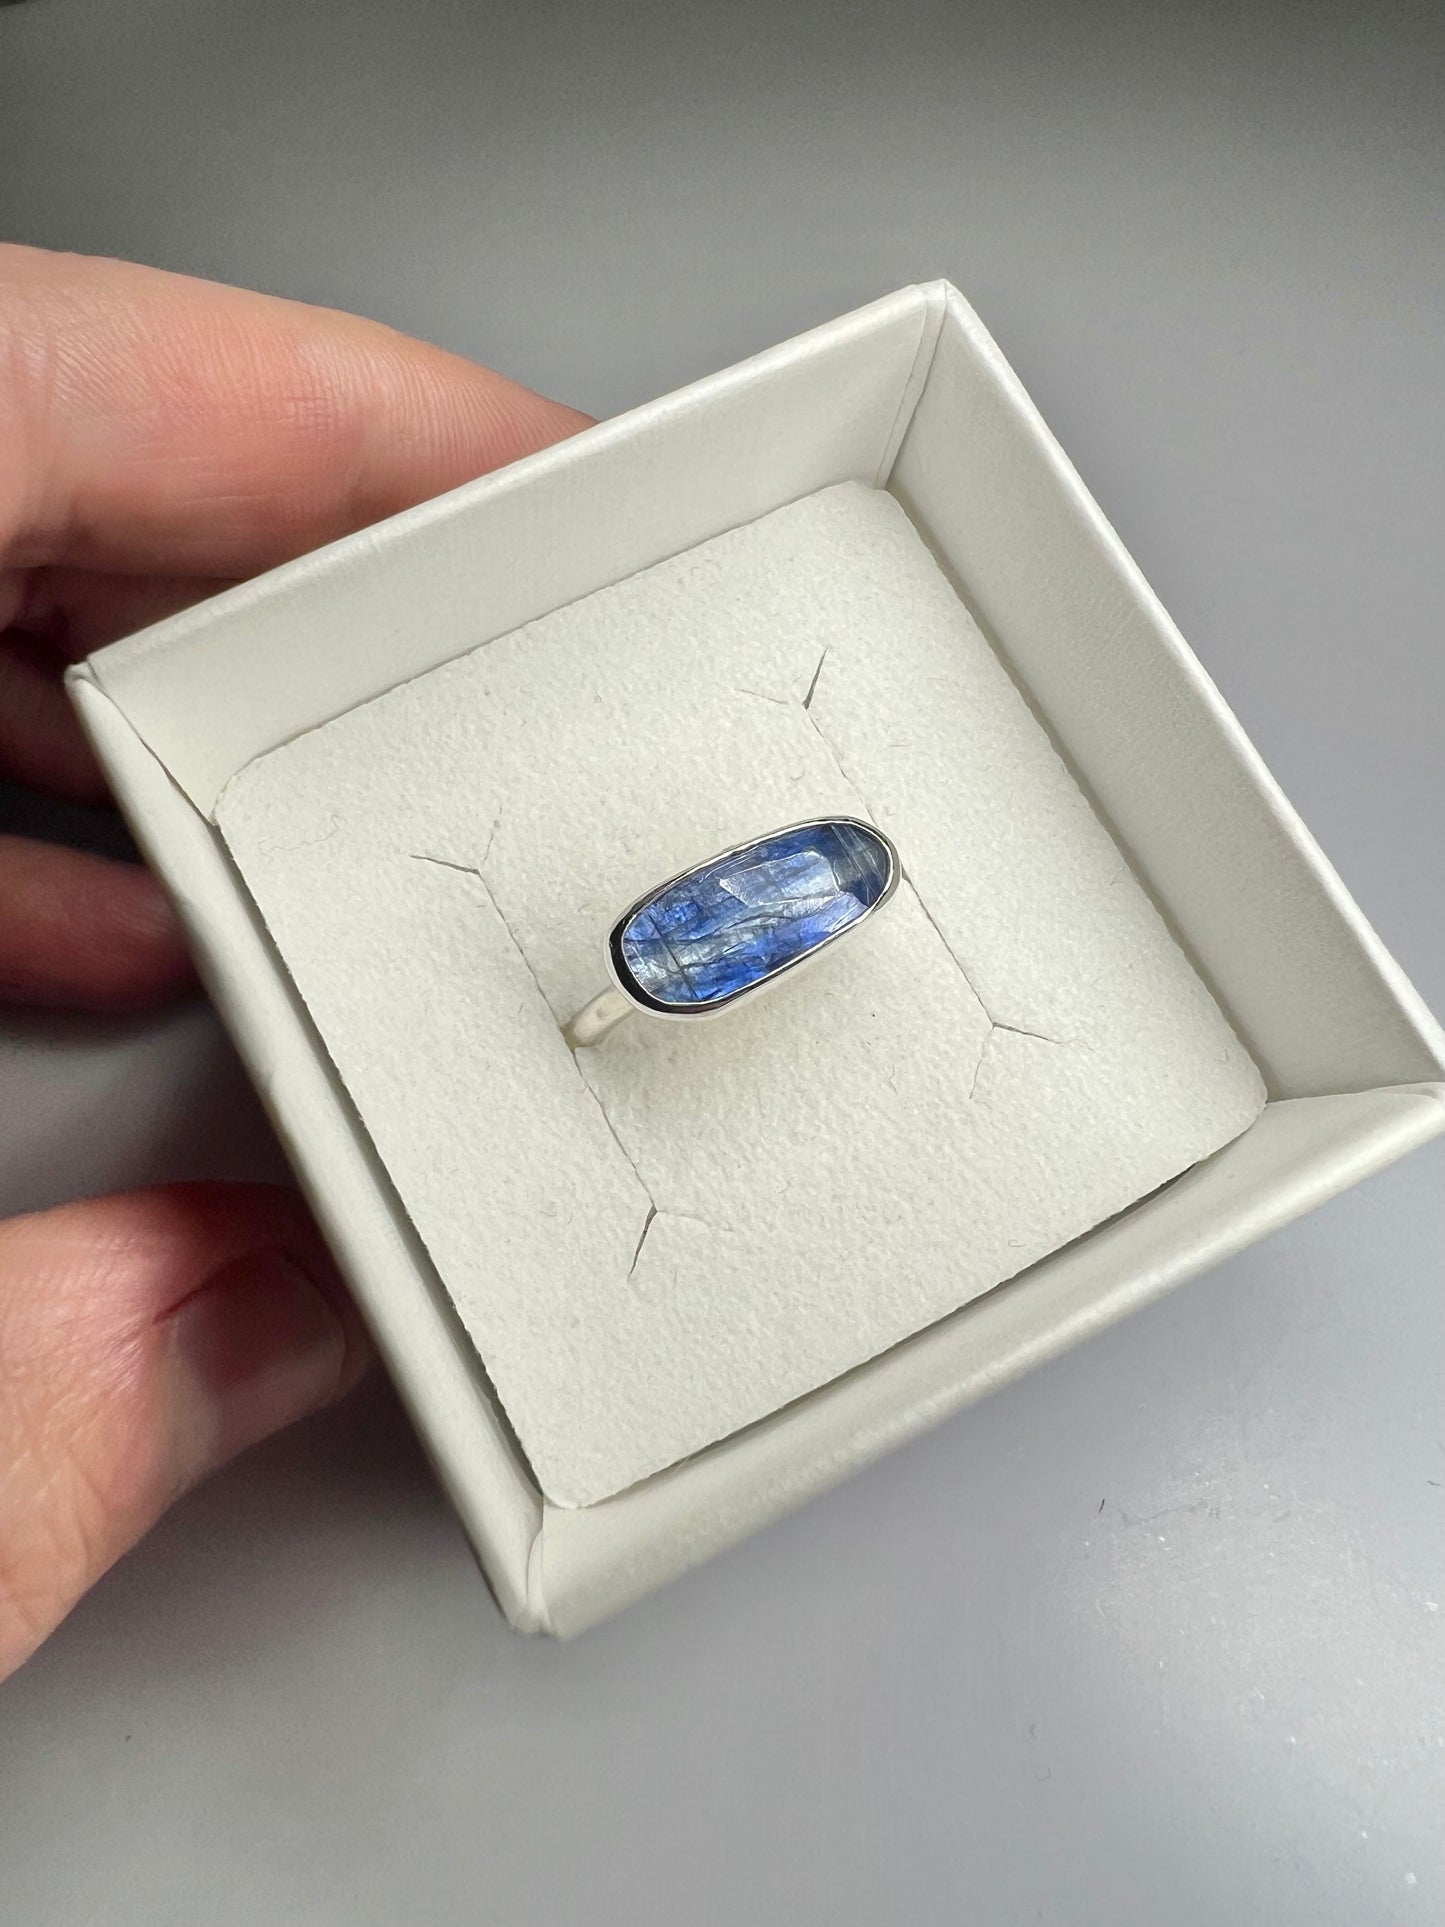 Kyanite gem stone ring size O